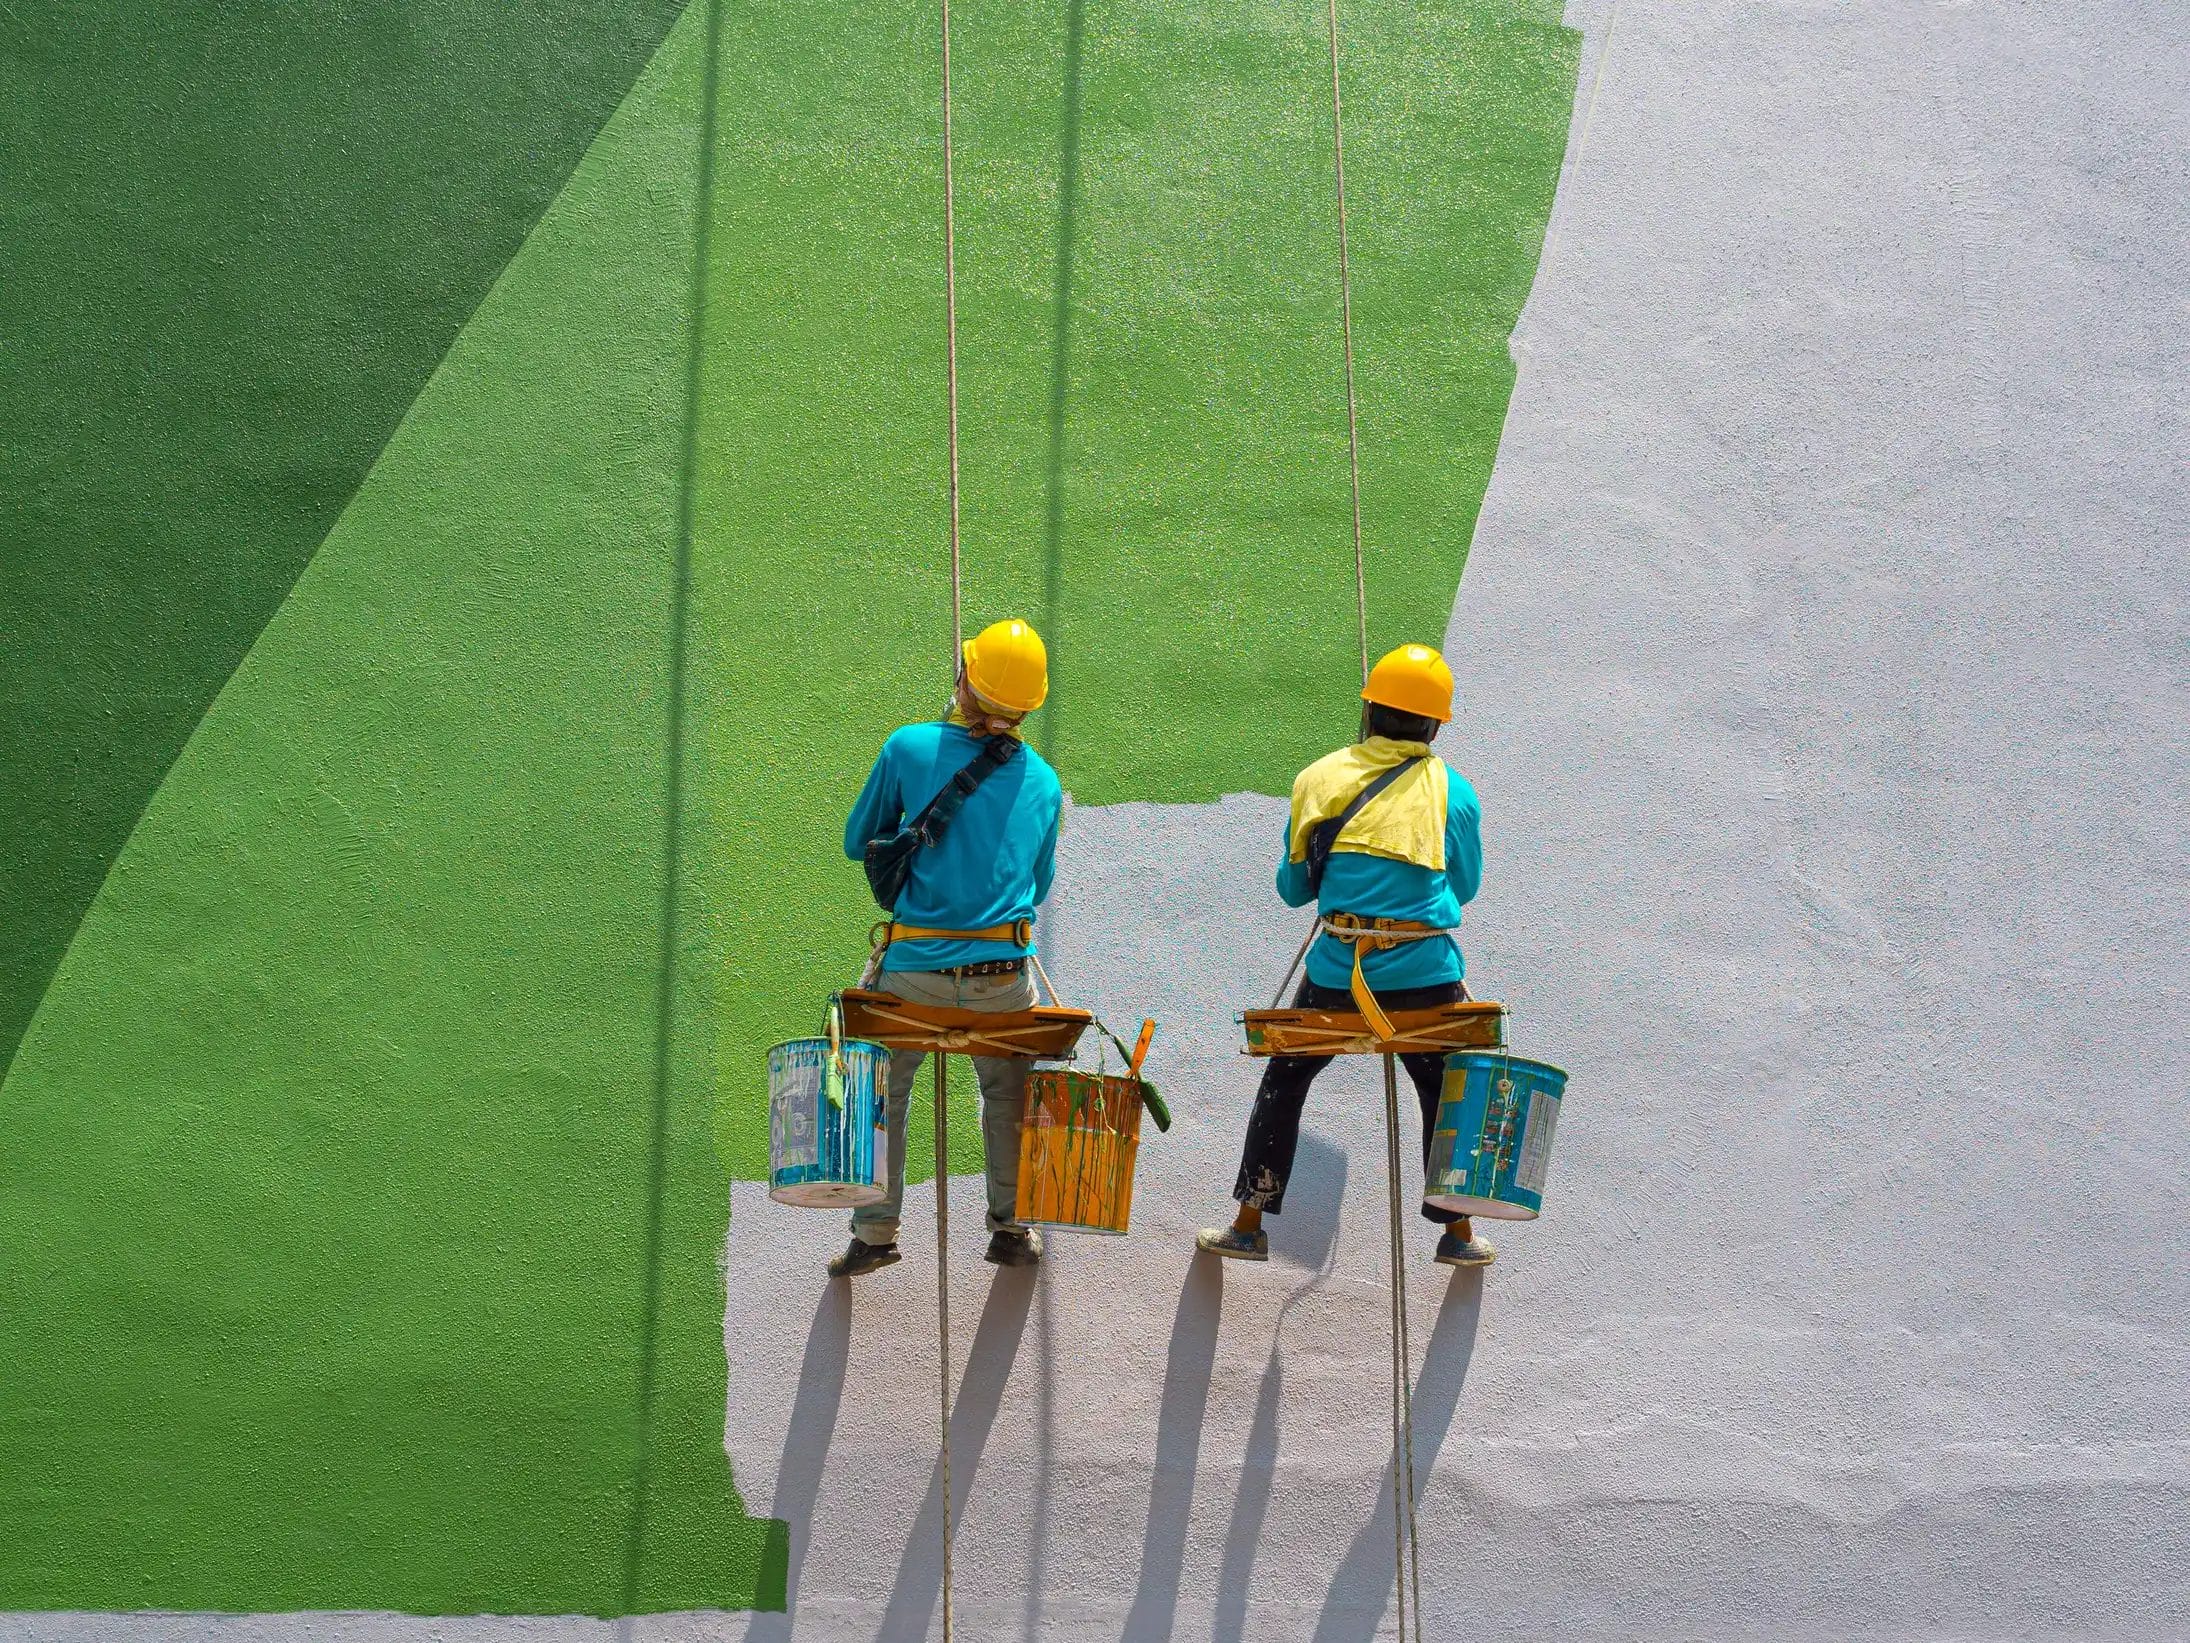 Especialistas en trabajos verticales, ofrecemos soluciones de pintura en altura con seguridad y calidad